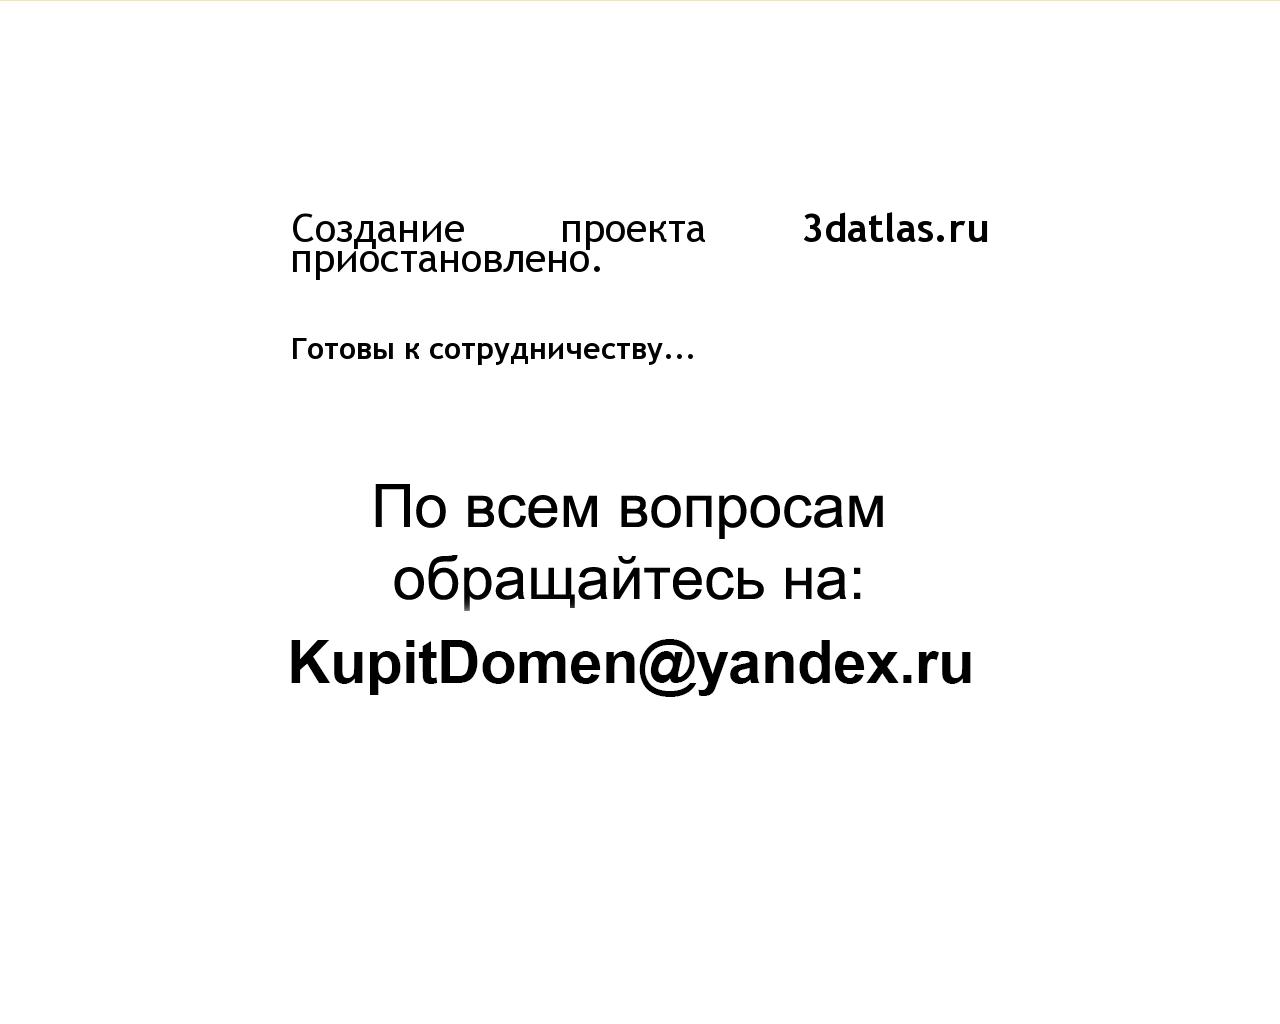 Изображение сайта 3datlas.ru в разрешении 1280x1024